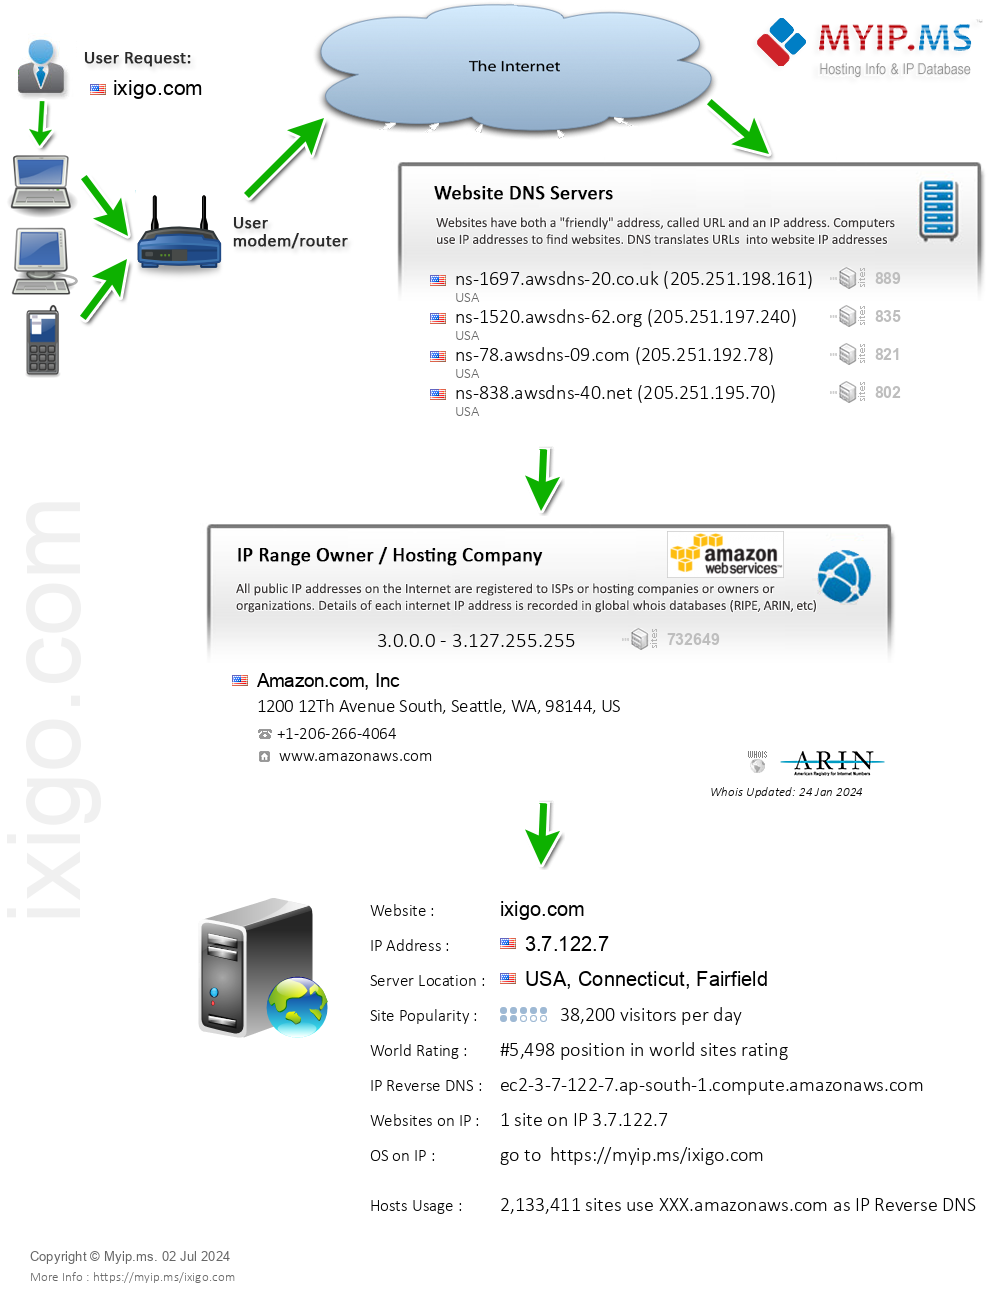 Ixigo.com - Website Hosting Visual IP Diagram